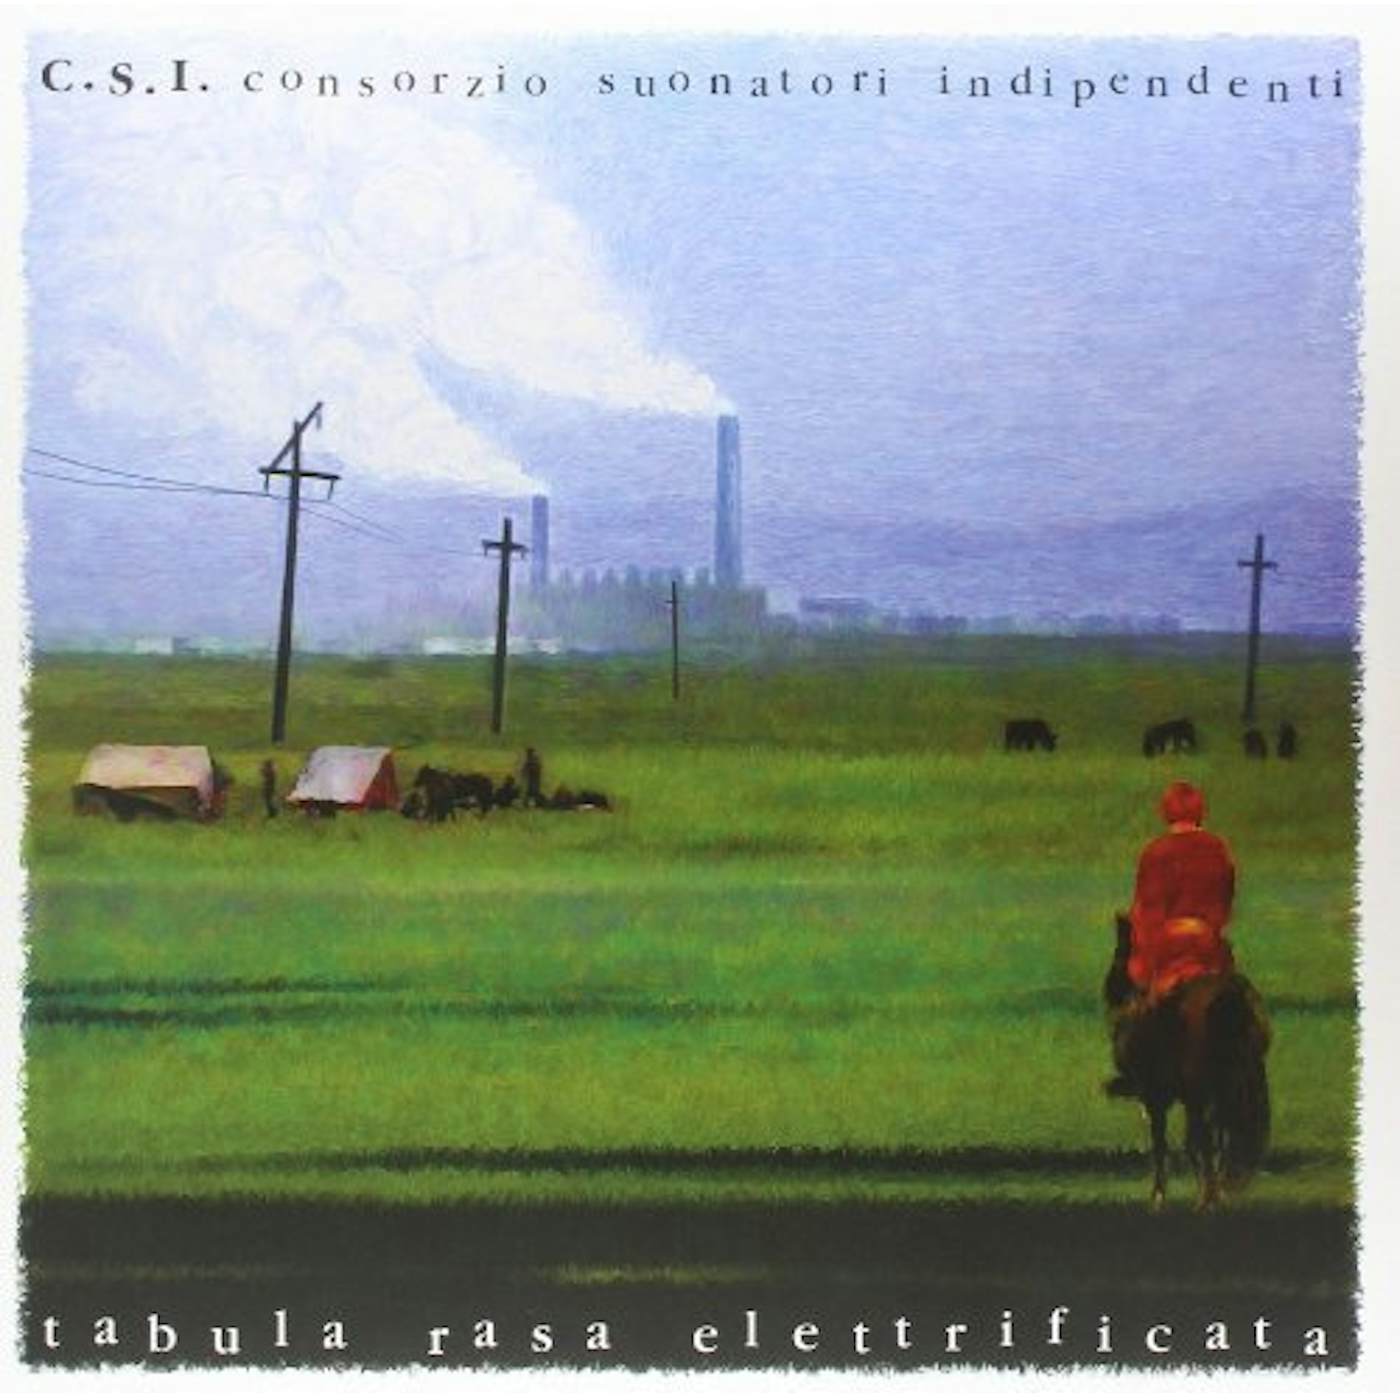 C.S.I. TABULA RASA ELETTRIFICATA Vinyl Record - Italy Release